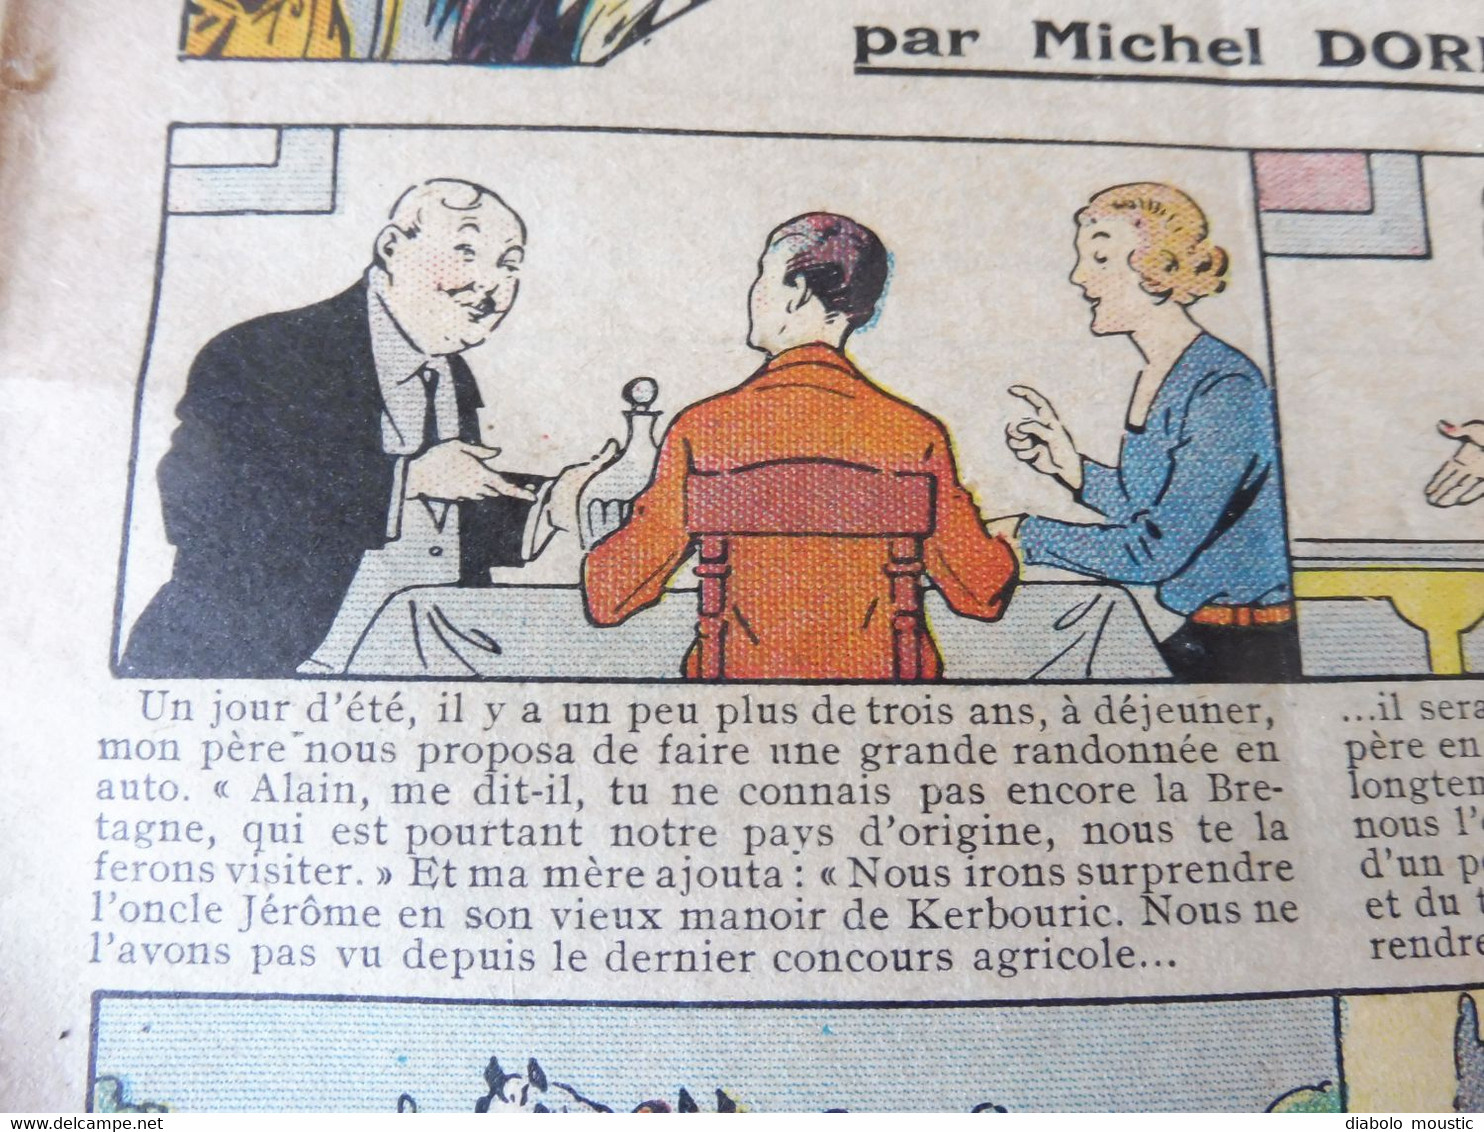 Année 1933  GUIGNOL Cinéma De La Jeunesse ...mais Pas Que ! (Mon Oncle Empereur ! ,Quelqu'un Troubla La Fête, BD, Etc ) - Magazines & Catalogues